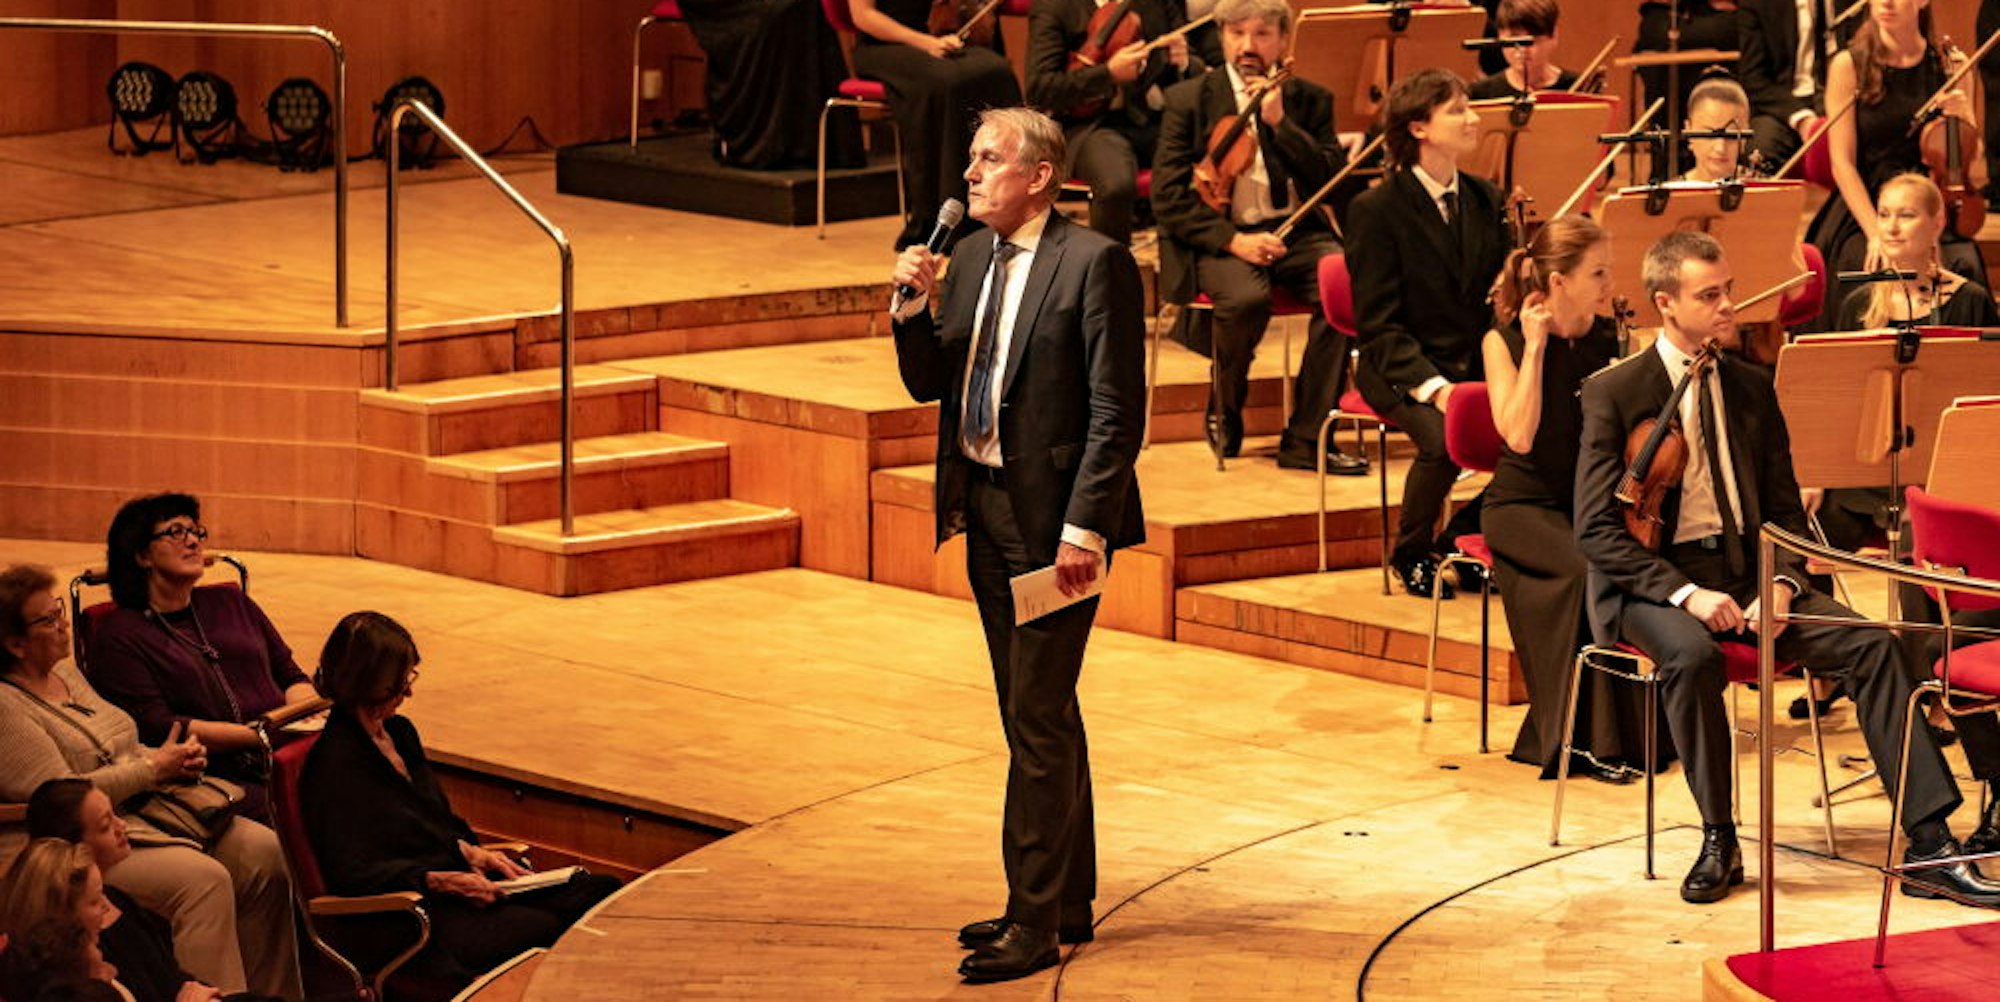 Volles Podium, volles Haus: Louwrens Langevoort bei einer Ansprache in der Kölner Philharmonie  2018, vor Corona     